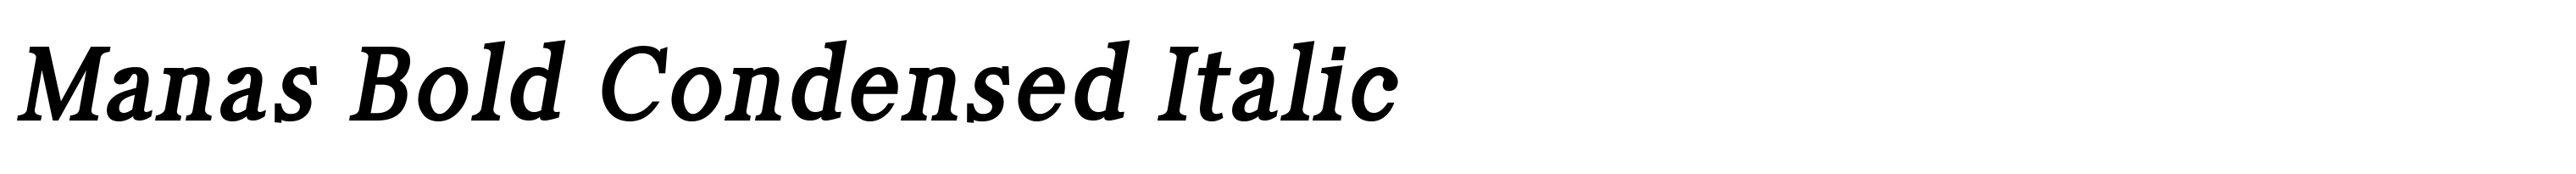 Manas Bold Condensed Italic